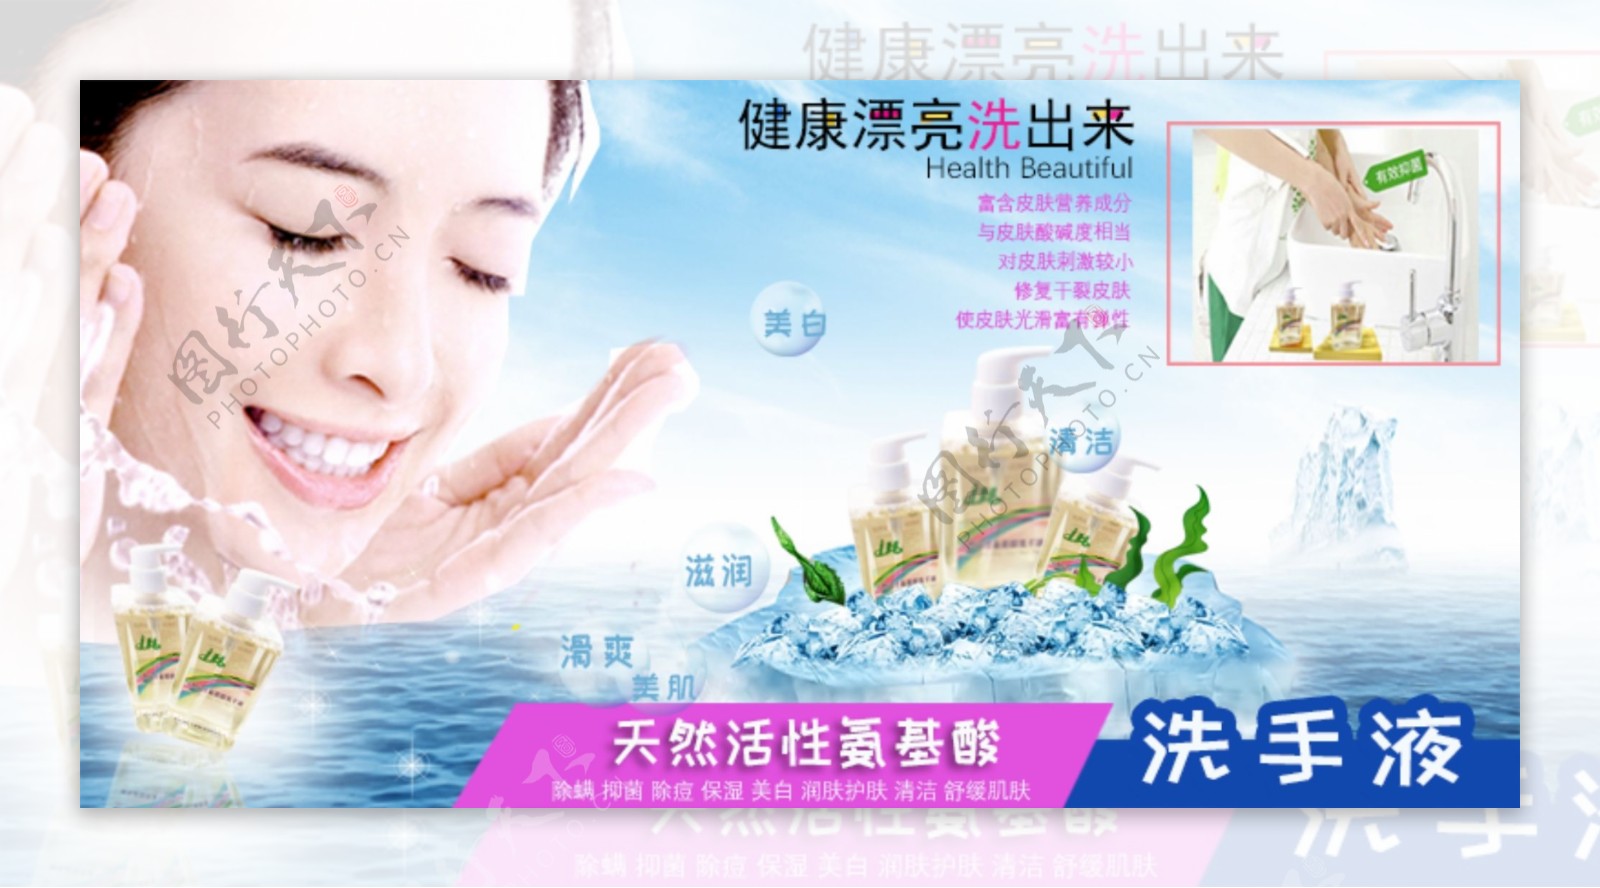 洗手液平面广告